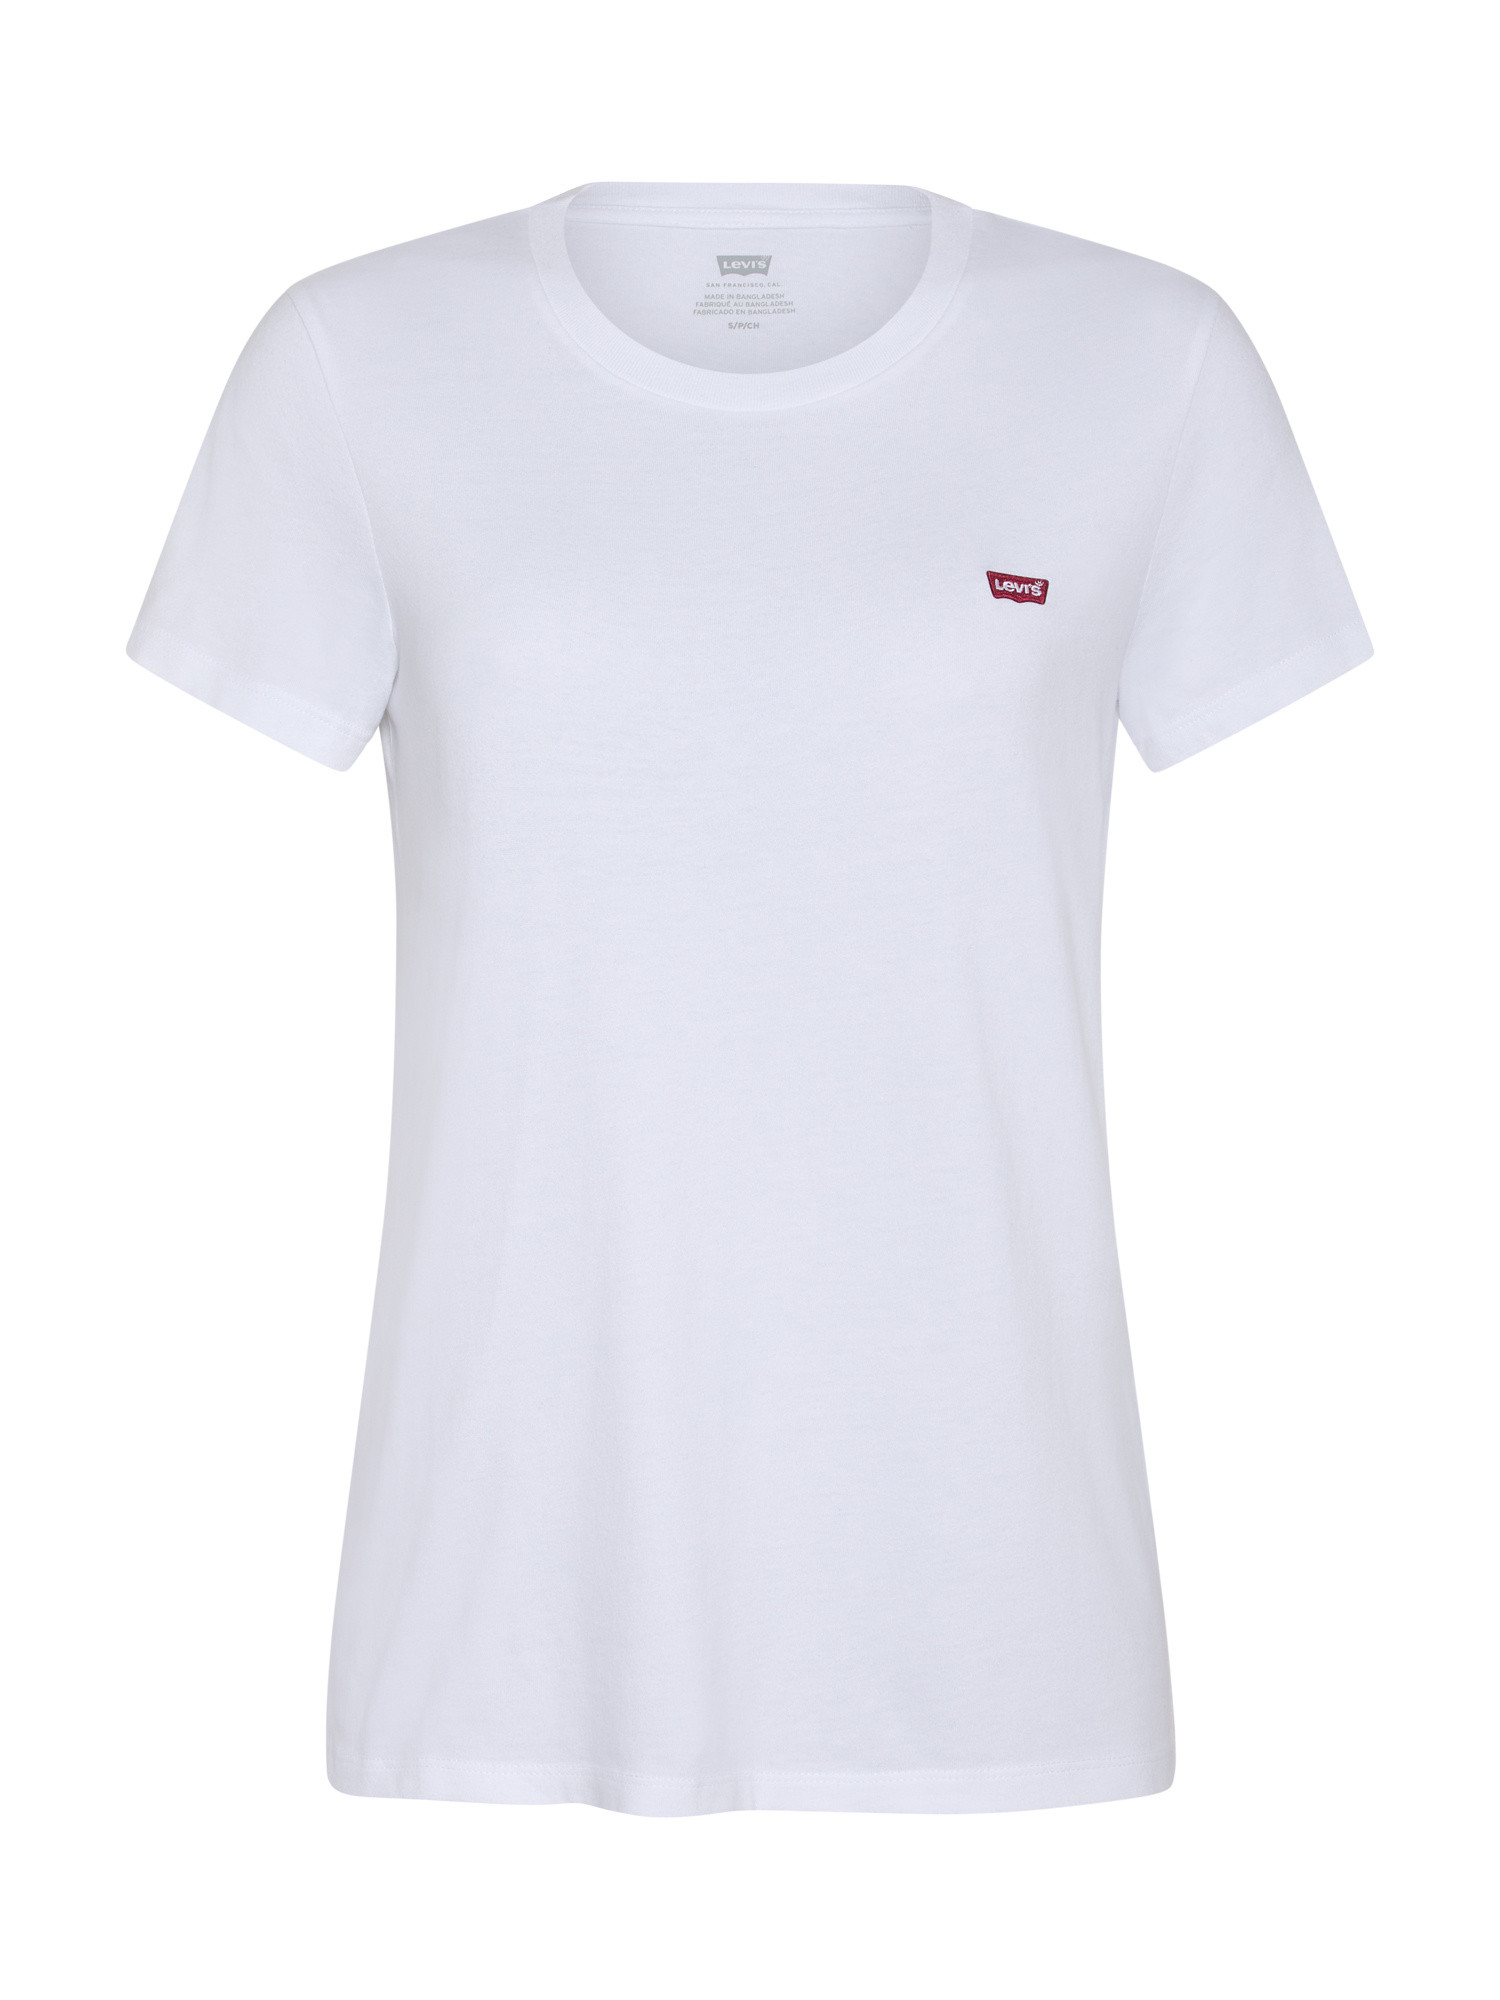 Levi's - Logo T-Shirt, White, large image number 0